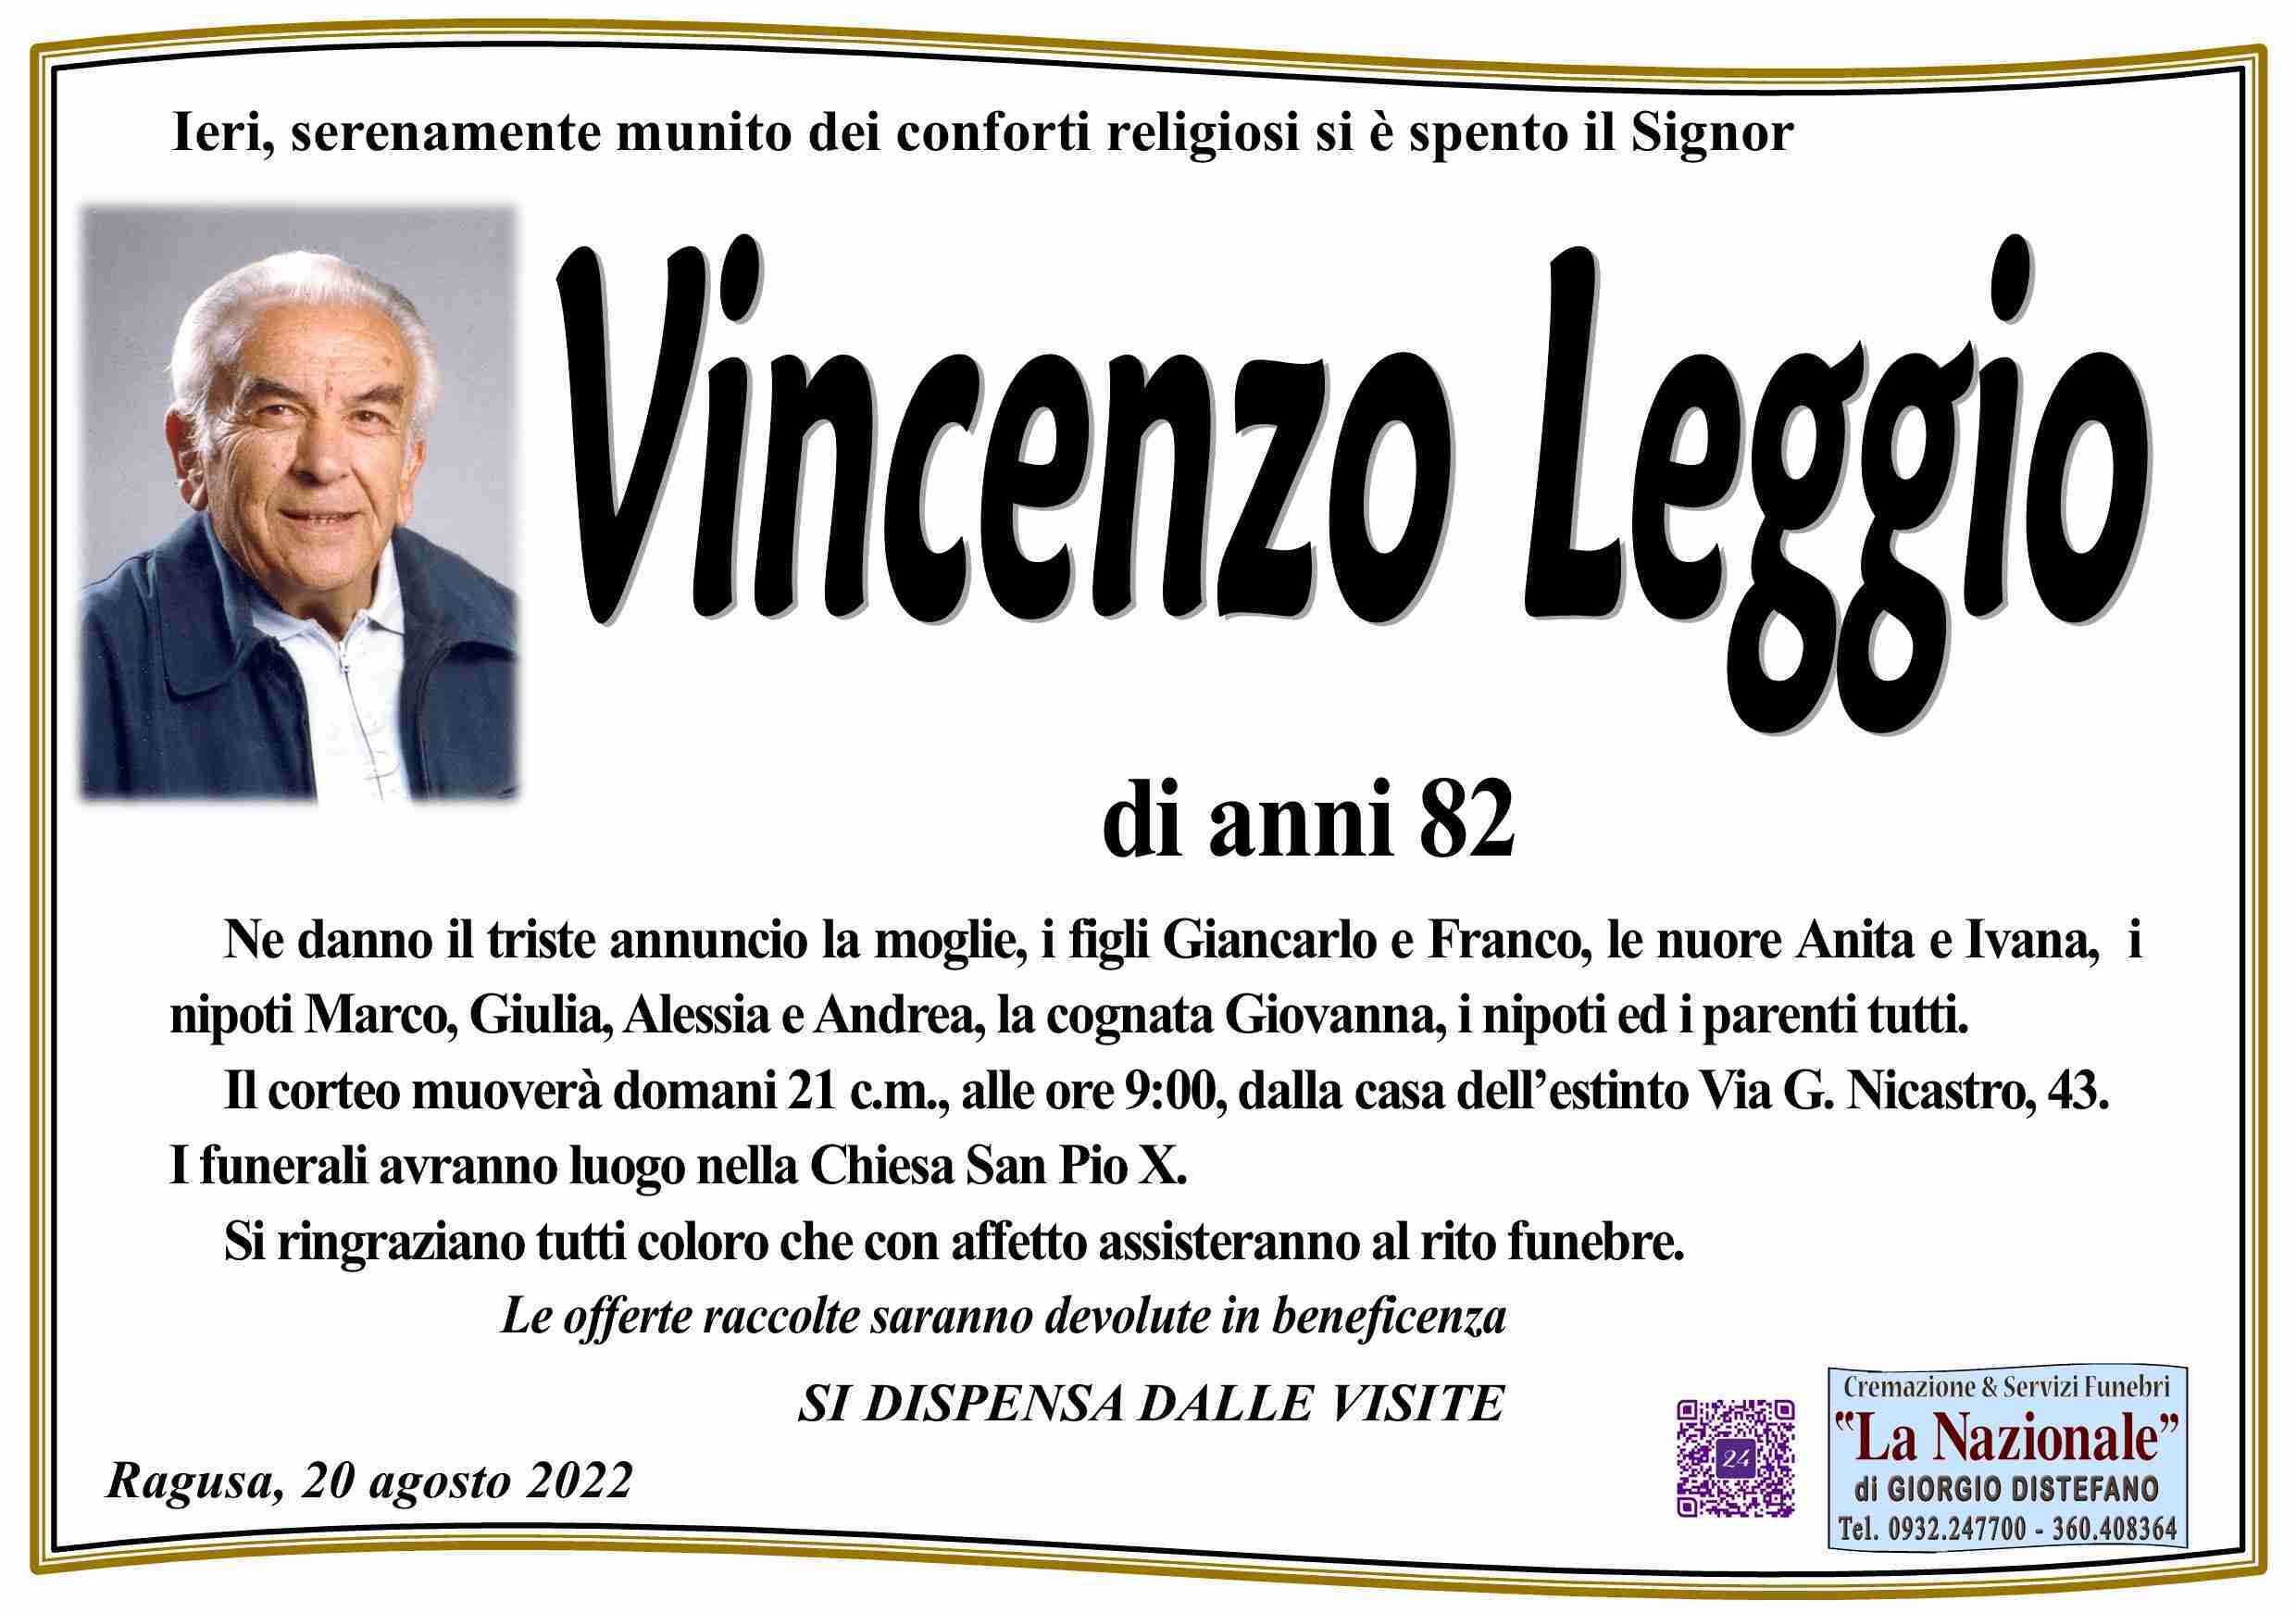 Vincenzo Leggio